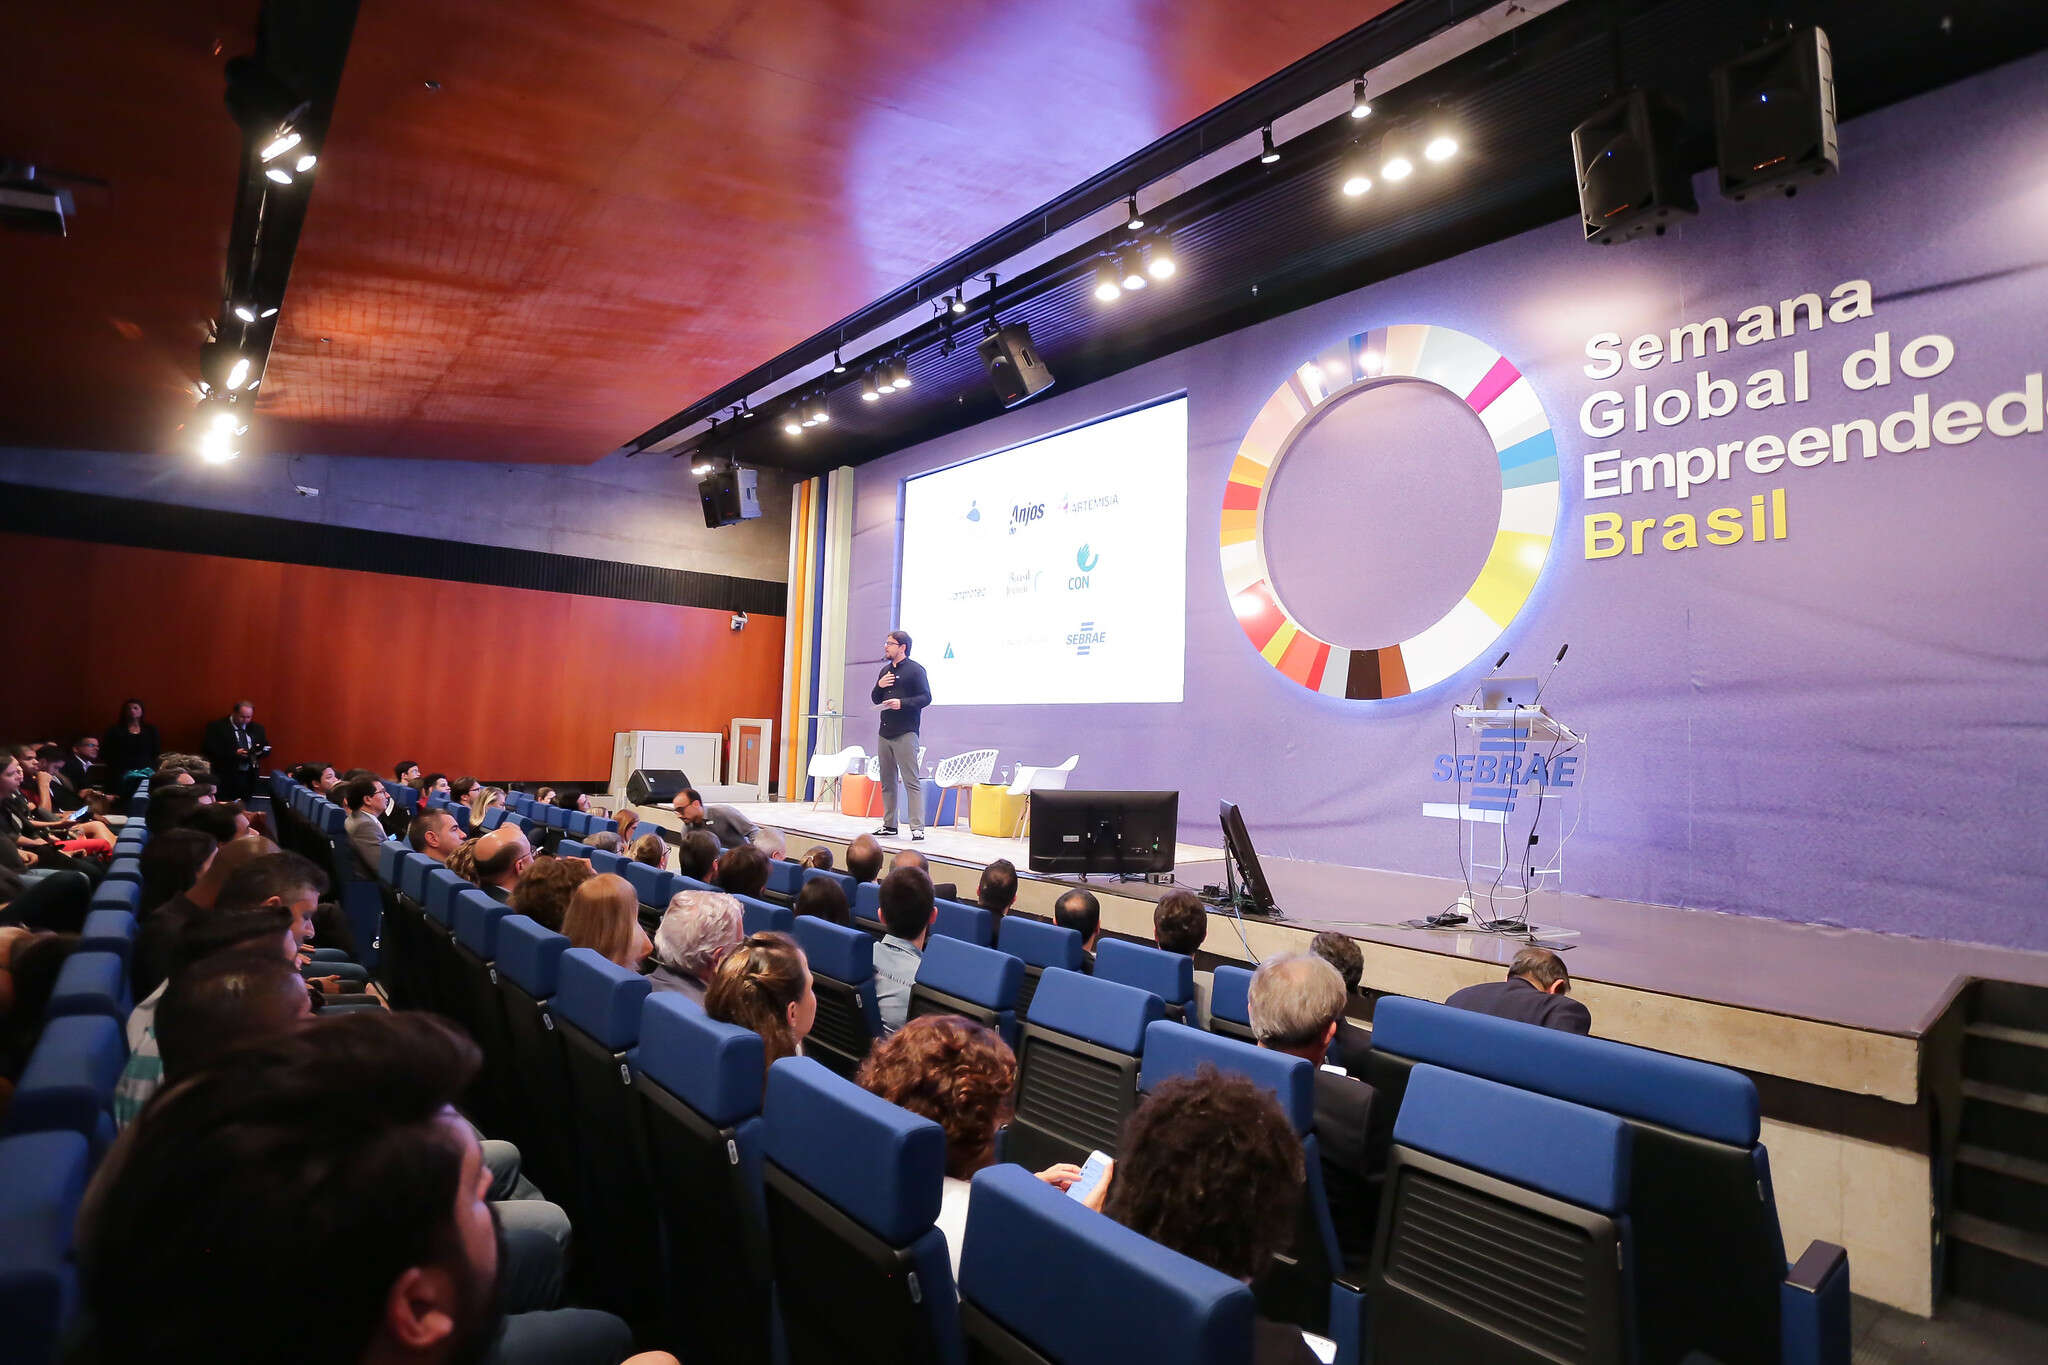 Por que a Semana Global do Empreendedorismo é tão importante para o ecossistema empreendedor?